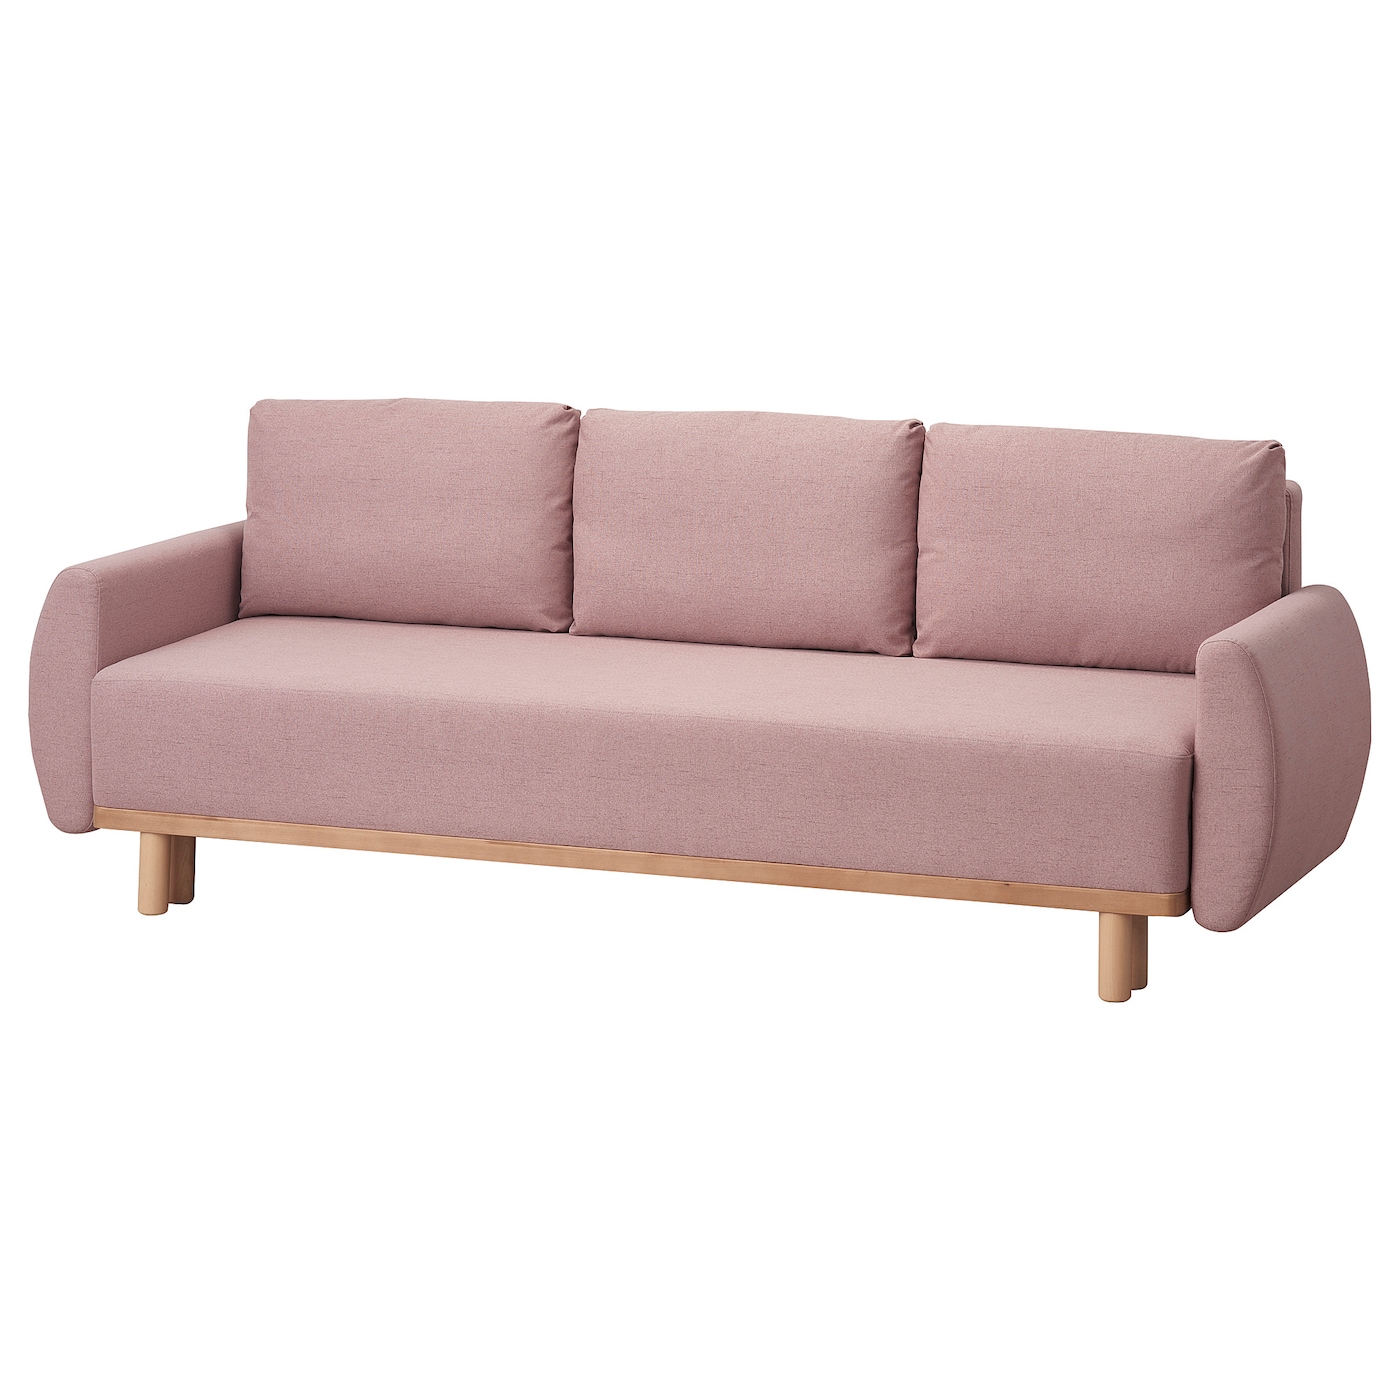 3-местный диван-кровать - IKEA GRUNNARP, 92x236см, розовый, ГРУННАРП ИКЕА